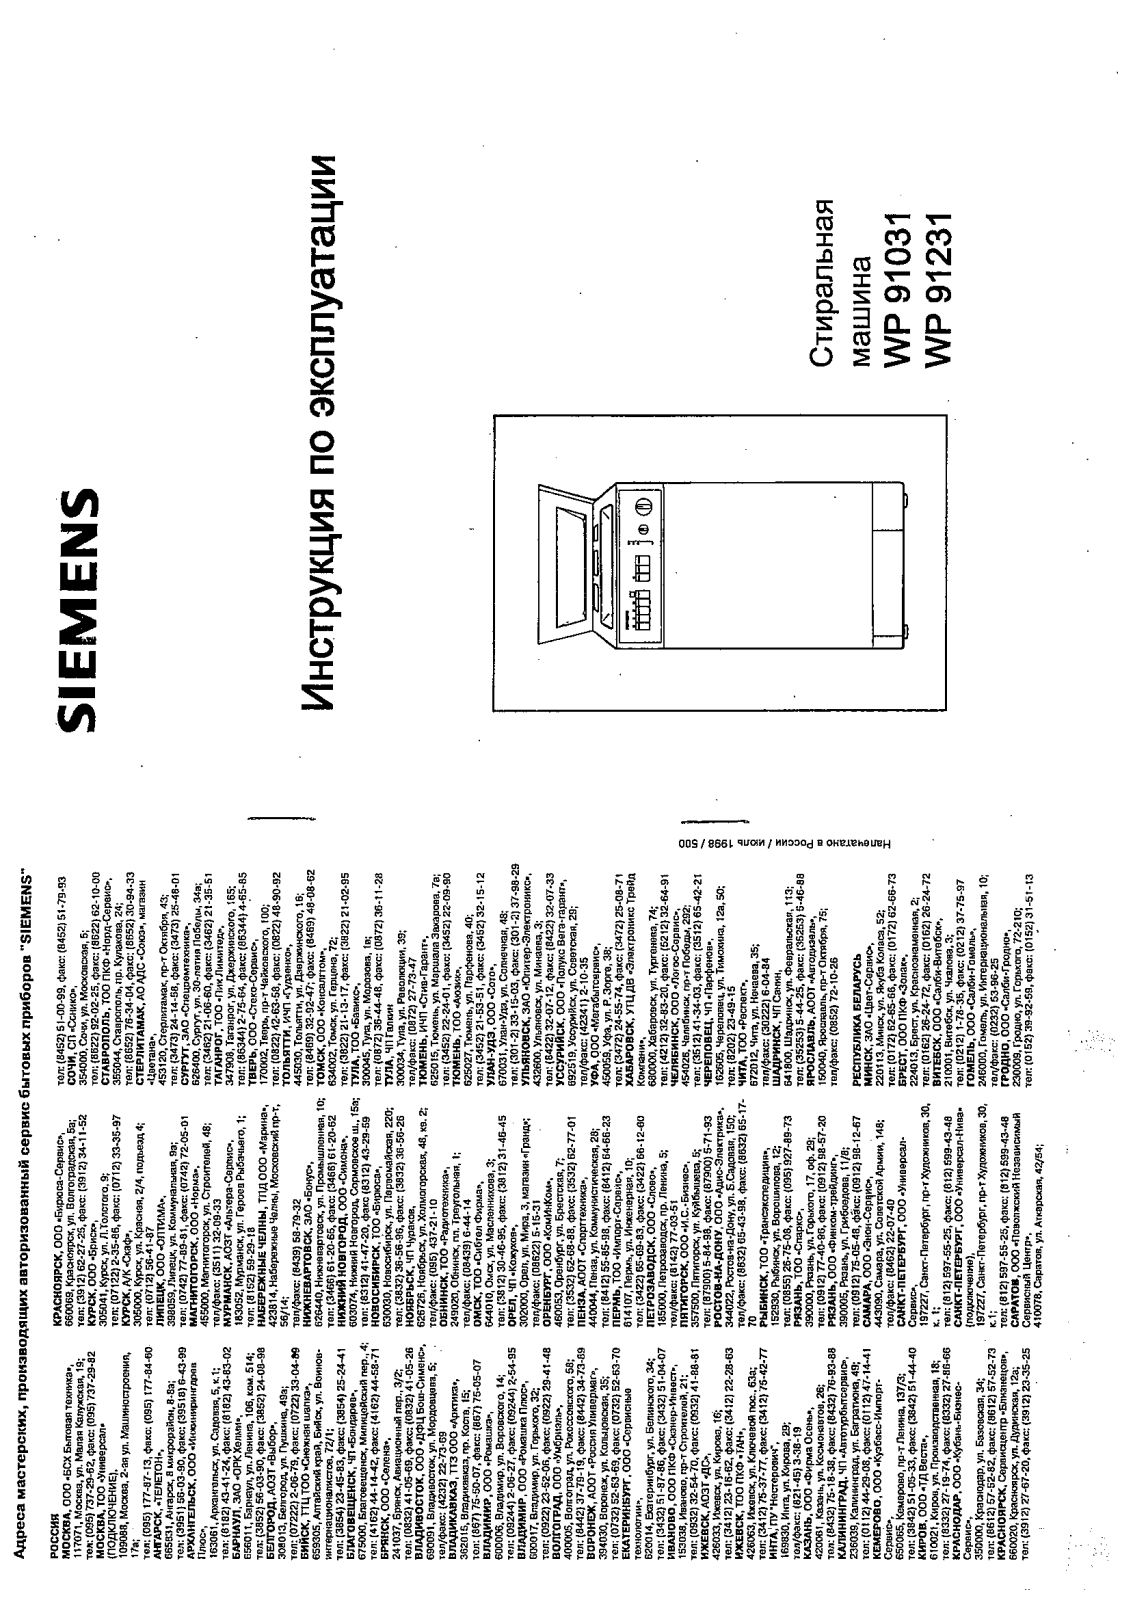 Siemens Siwamat 9123, WP 91231, WP 91031, Siwamat 9103 User Manual